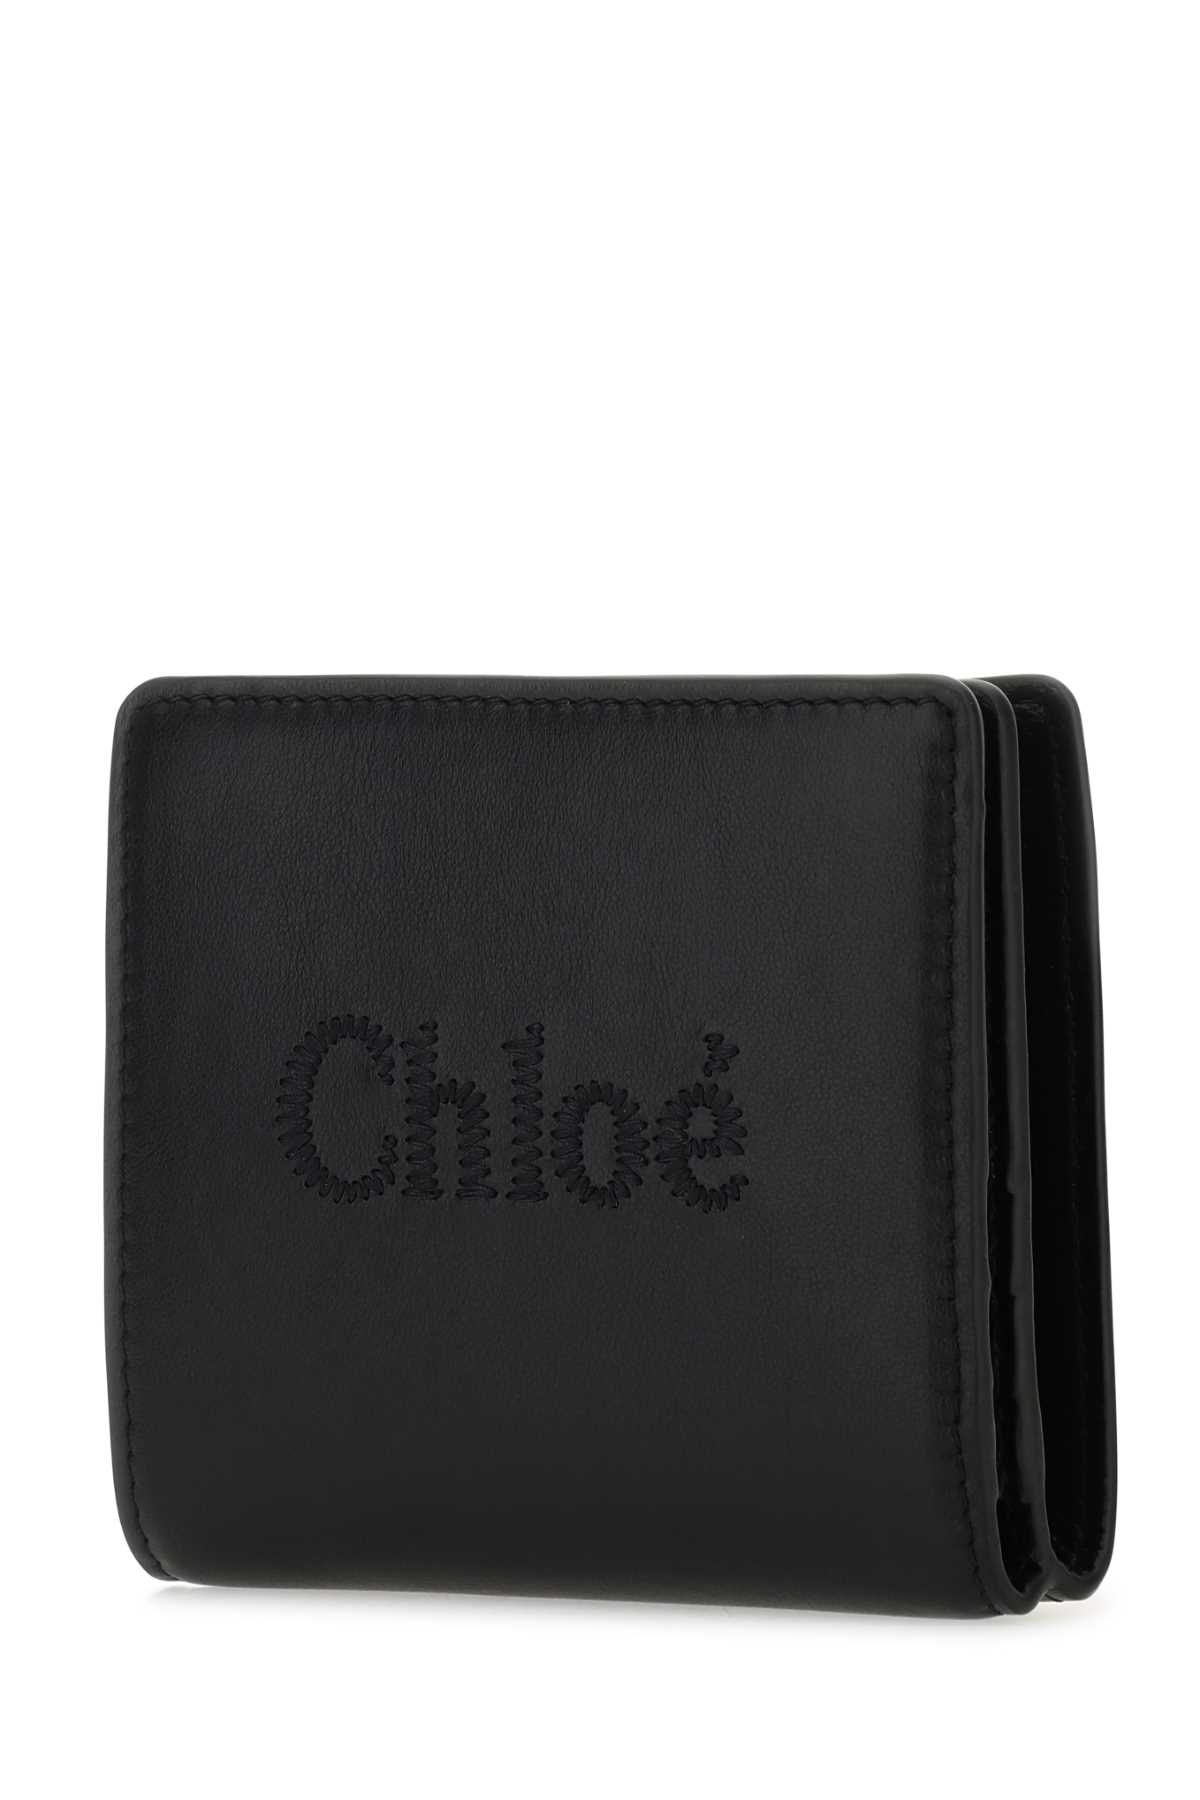 Chloé Black Leather Sense Wallet